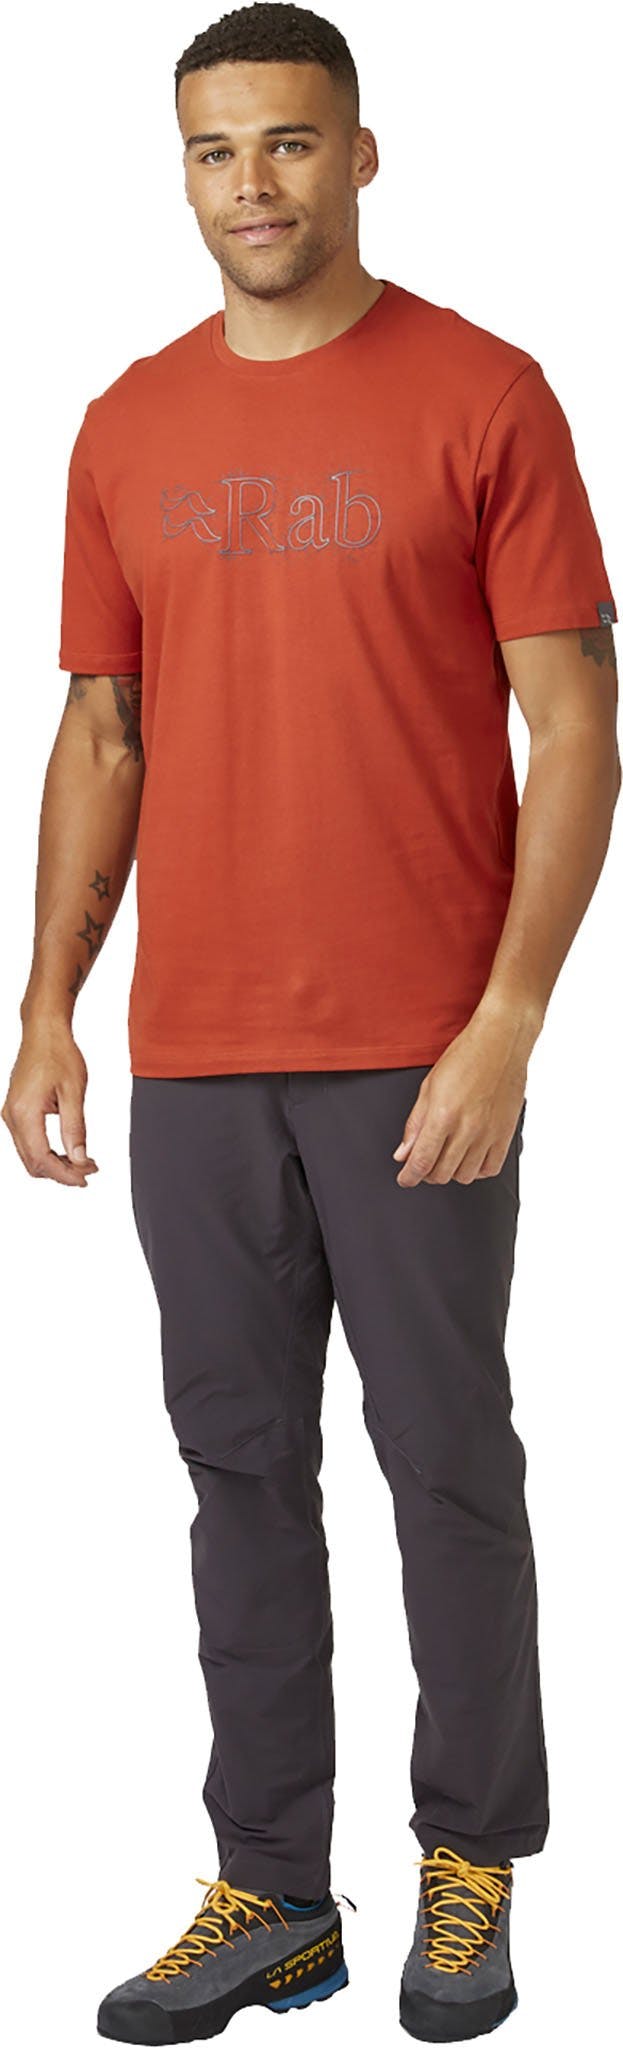 Numéro de l'image de la galerie de produits 4 pour le produit T-shirt Sketch de Stance - Homme